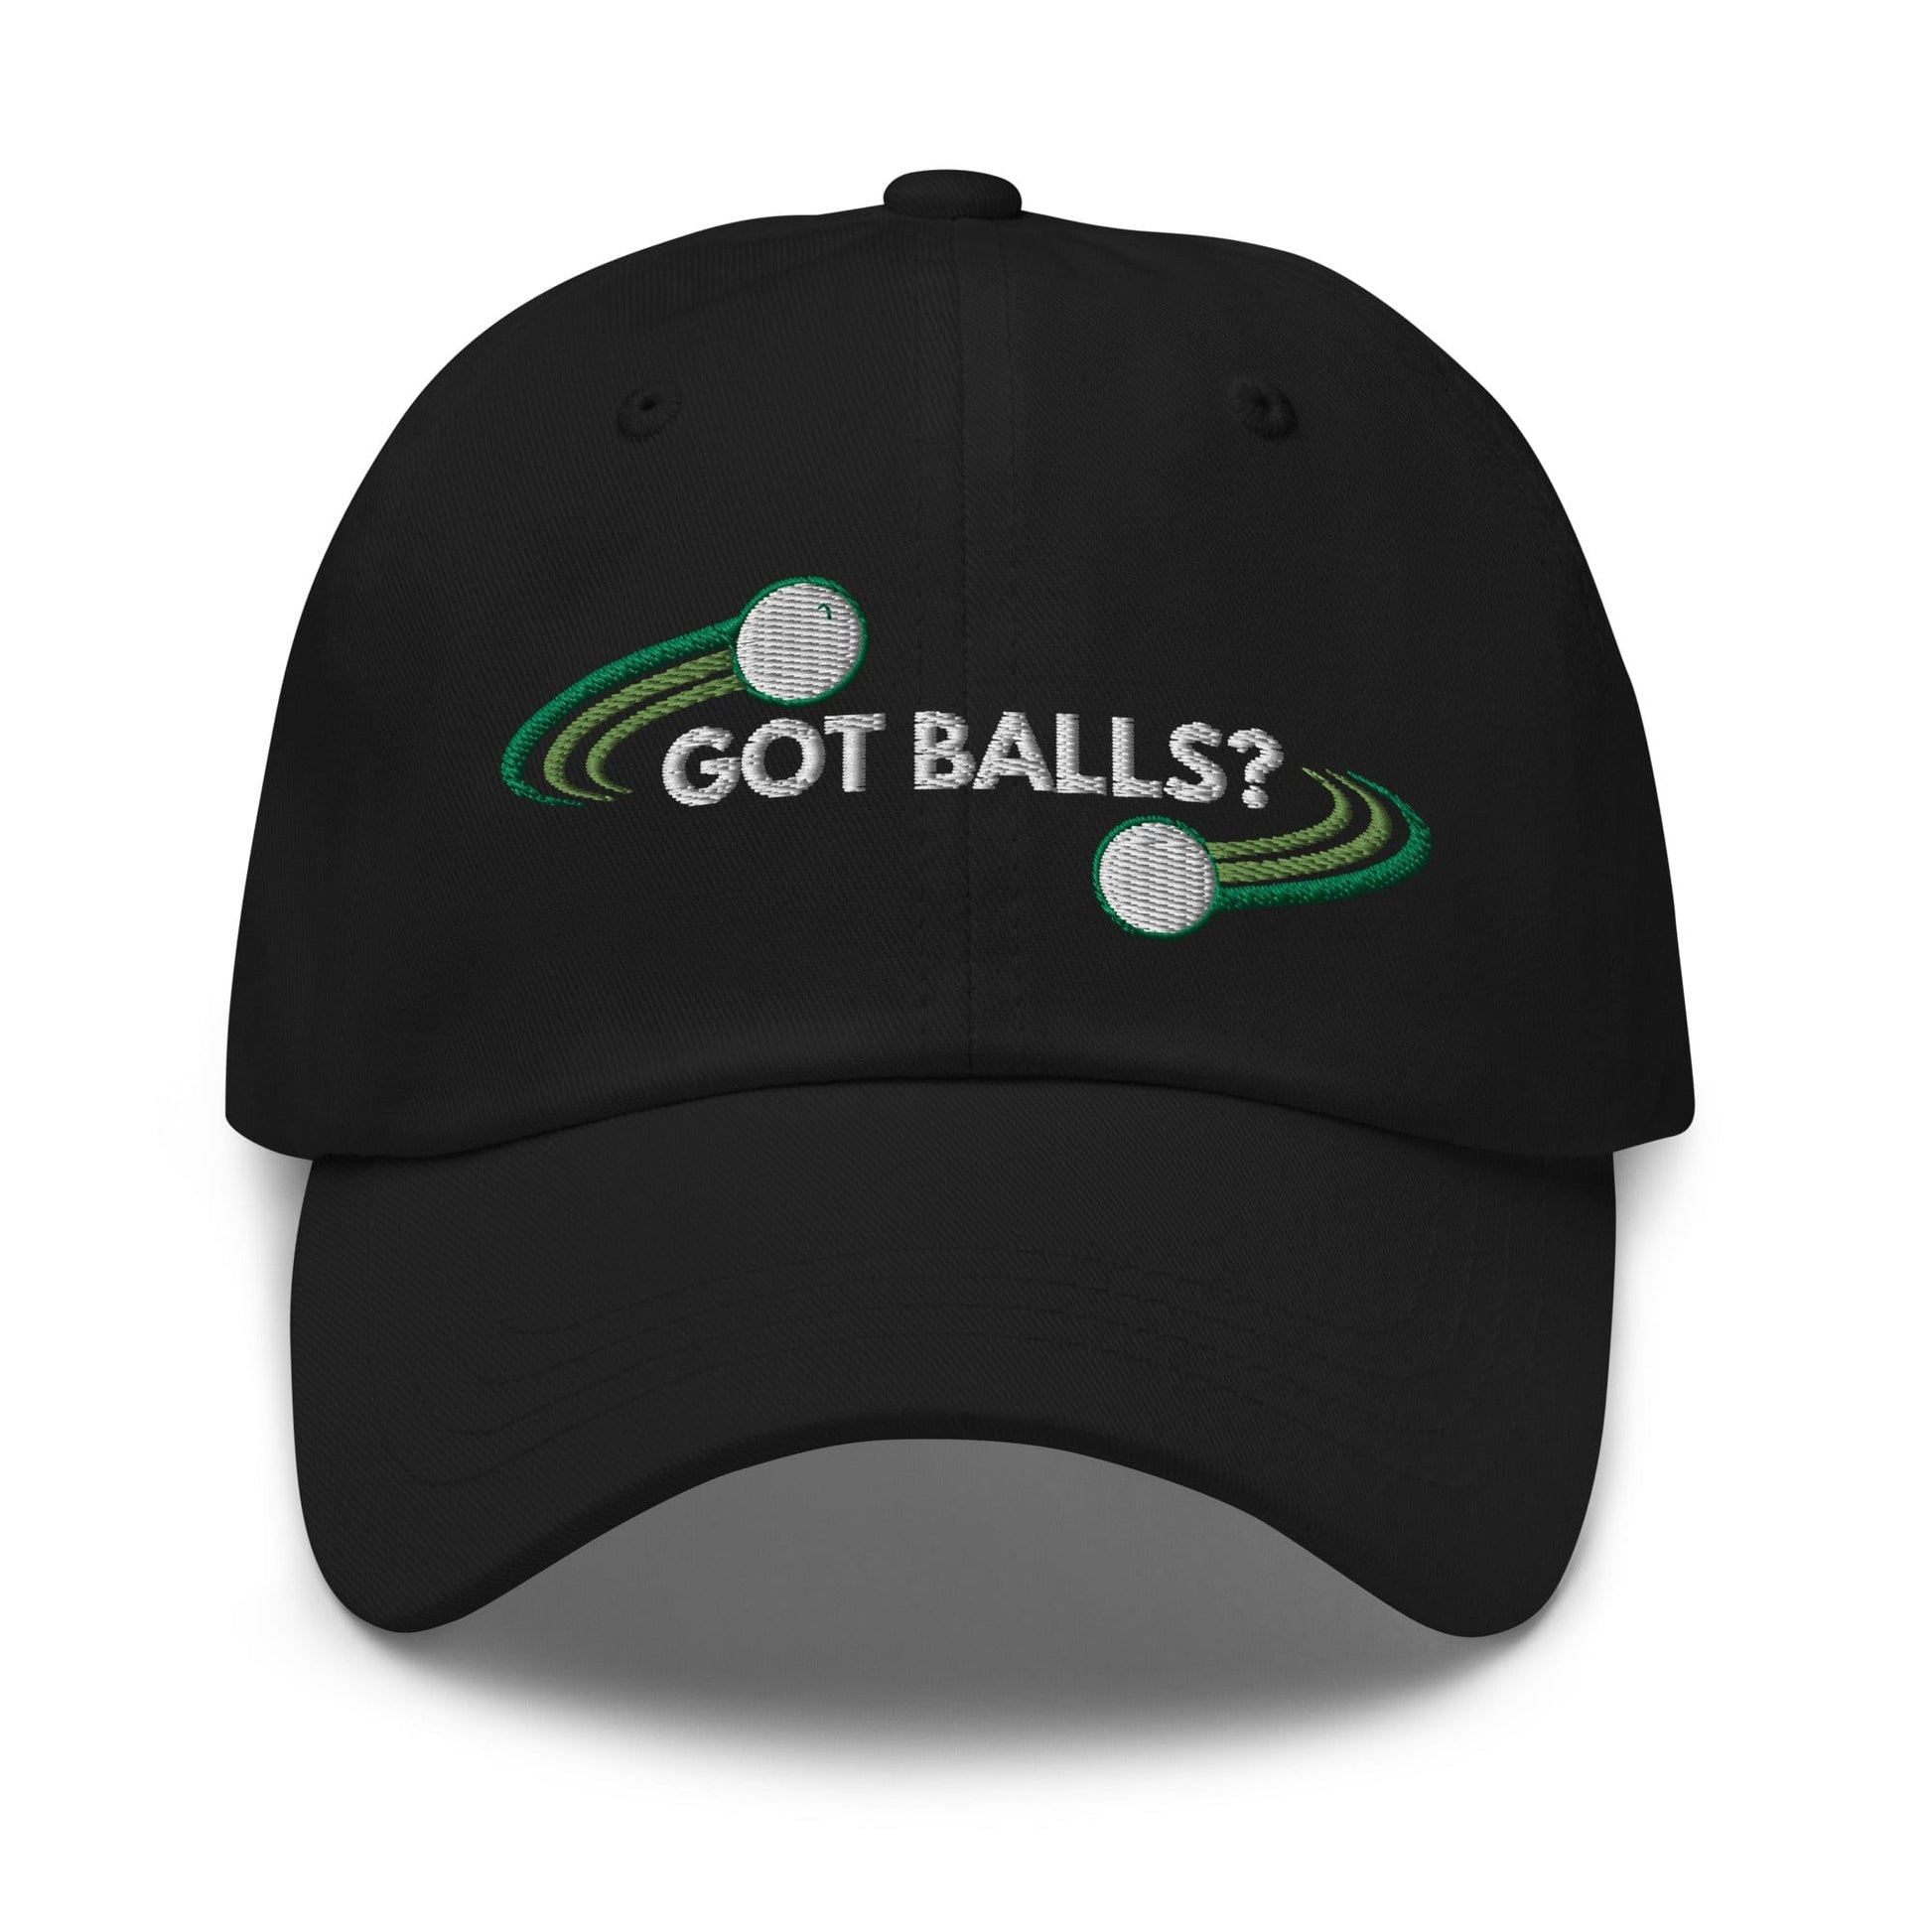 Funny Golfer Gifts  Dad Cap Black Got Balls Cap